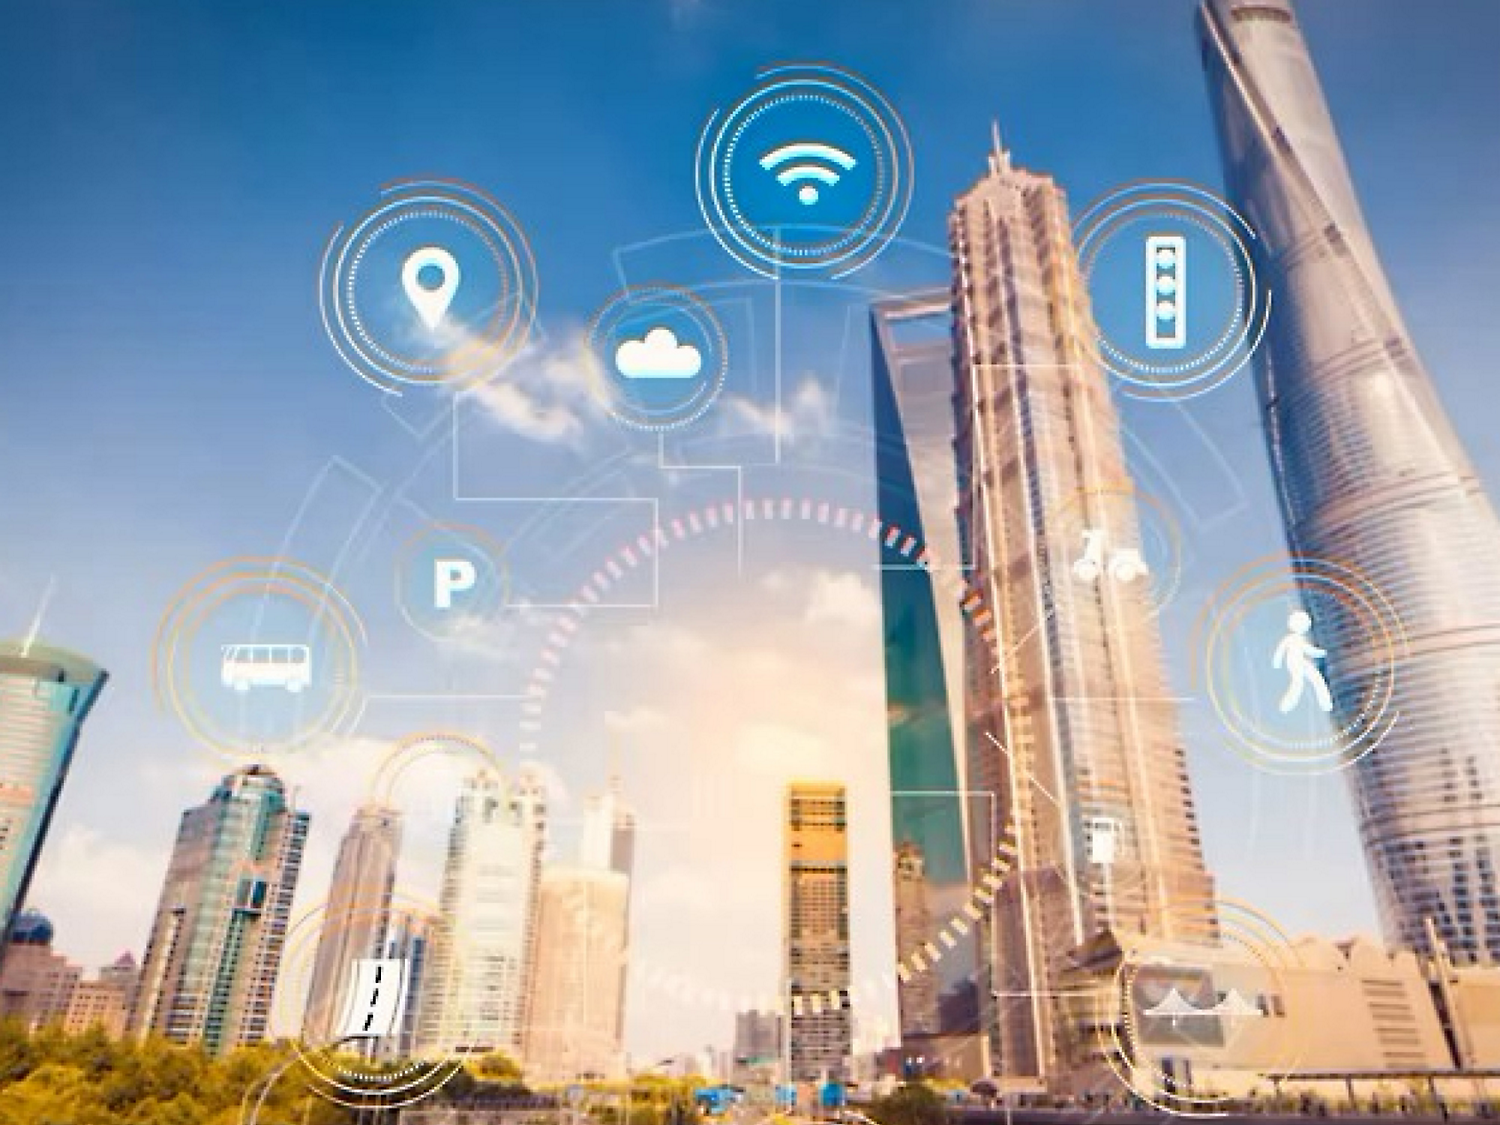 Ilustração de uma cidade inteligente com ícones digitais representando wi-fi, computação em nuvem e outras tecnologias com arranha-céus.